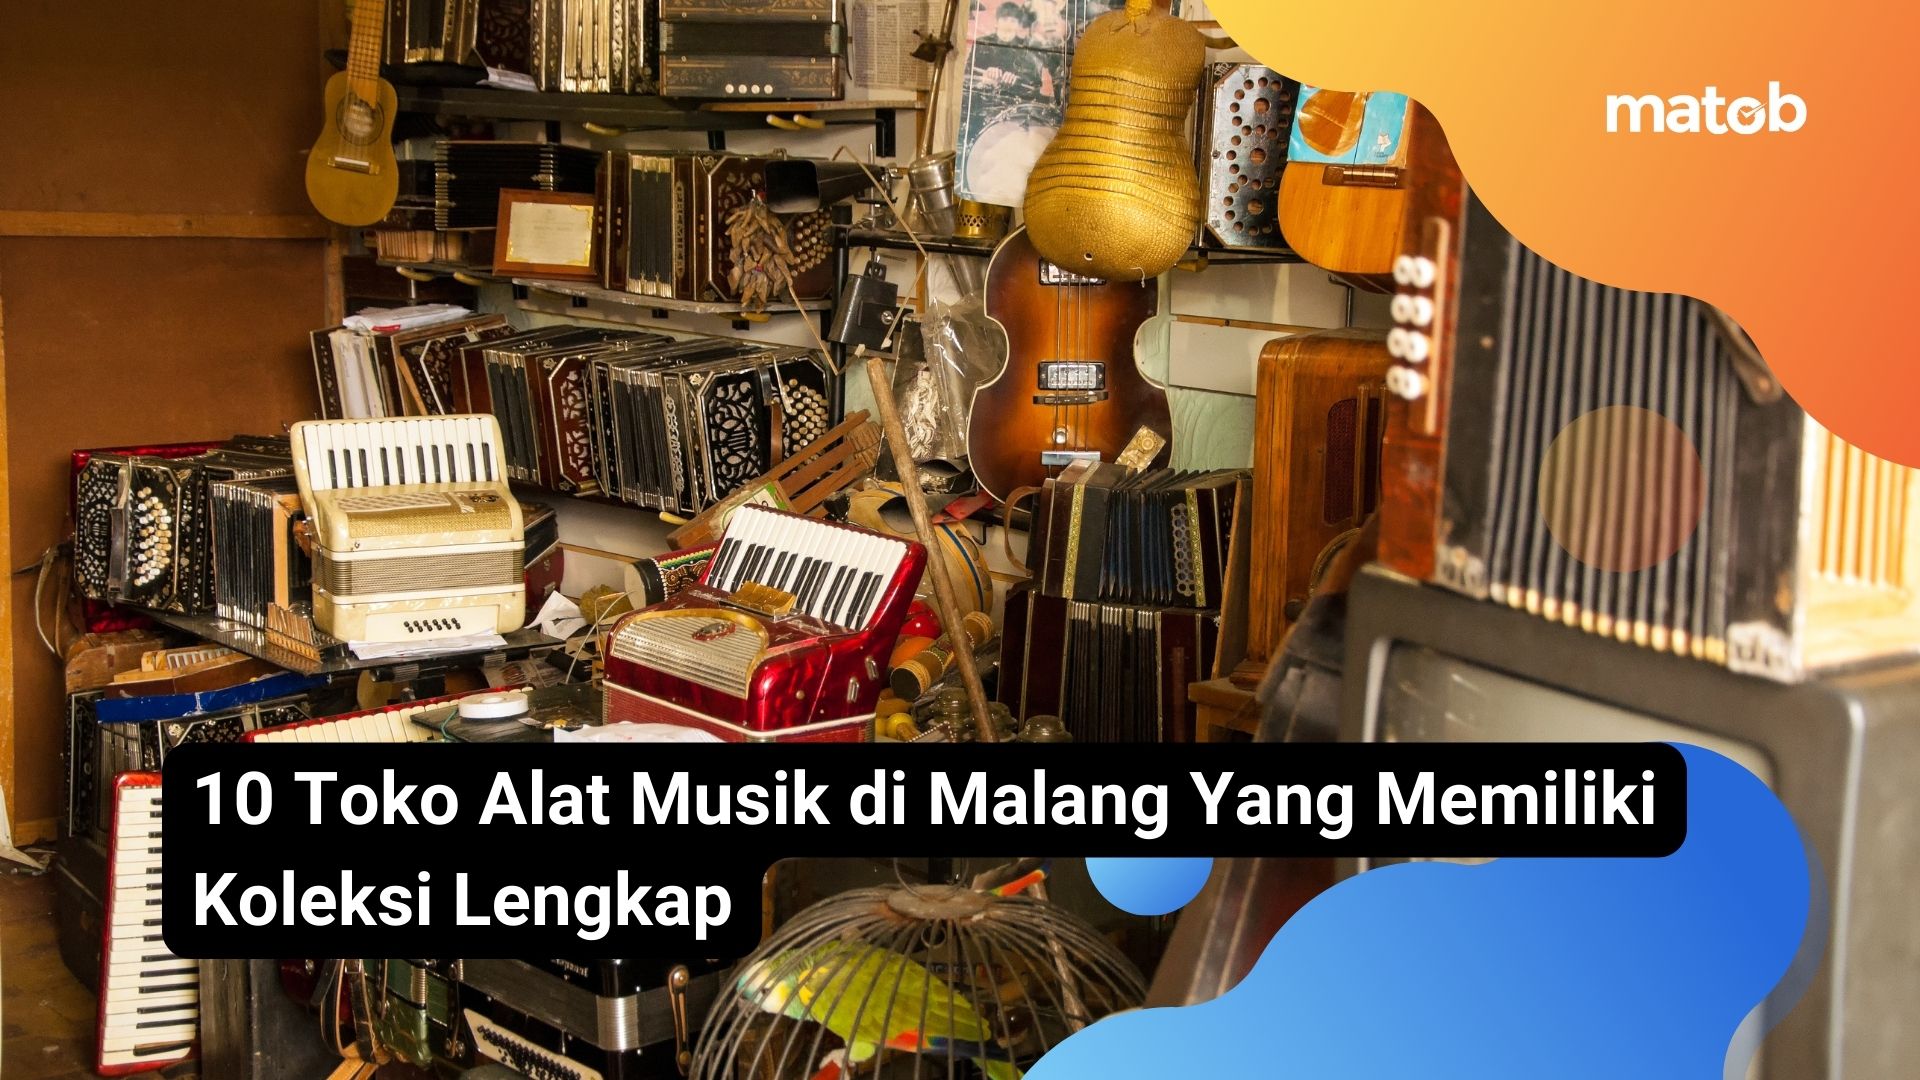 10 Toko Alat Musik di Malang Yang Memiliki Koleksi Lengkap